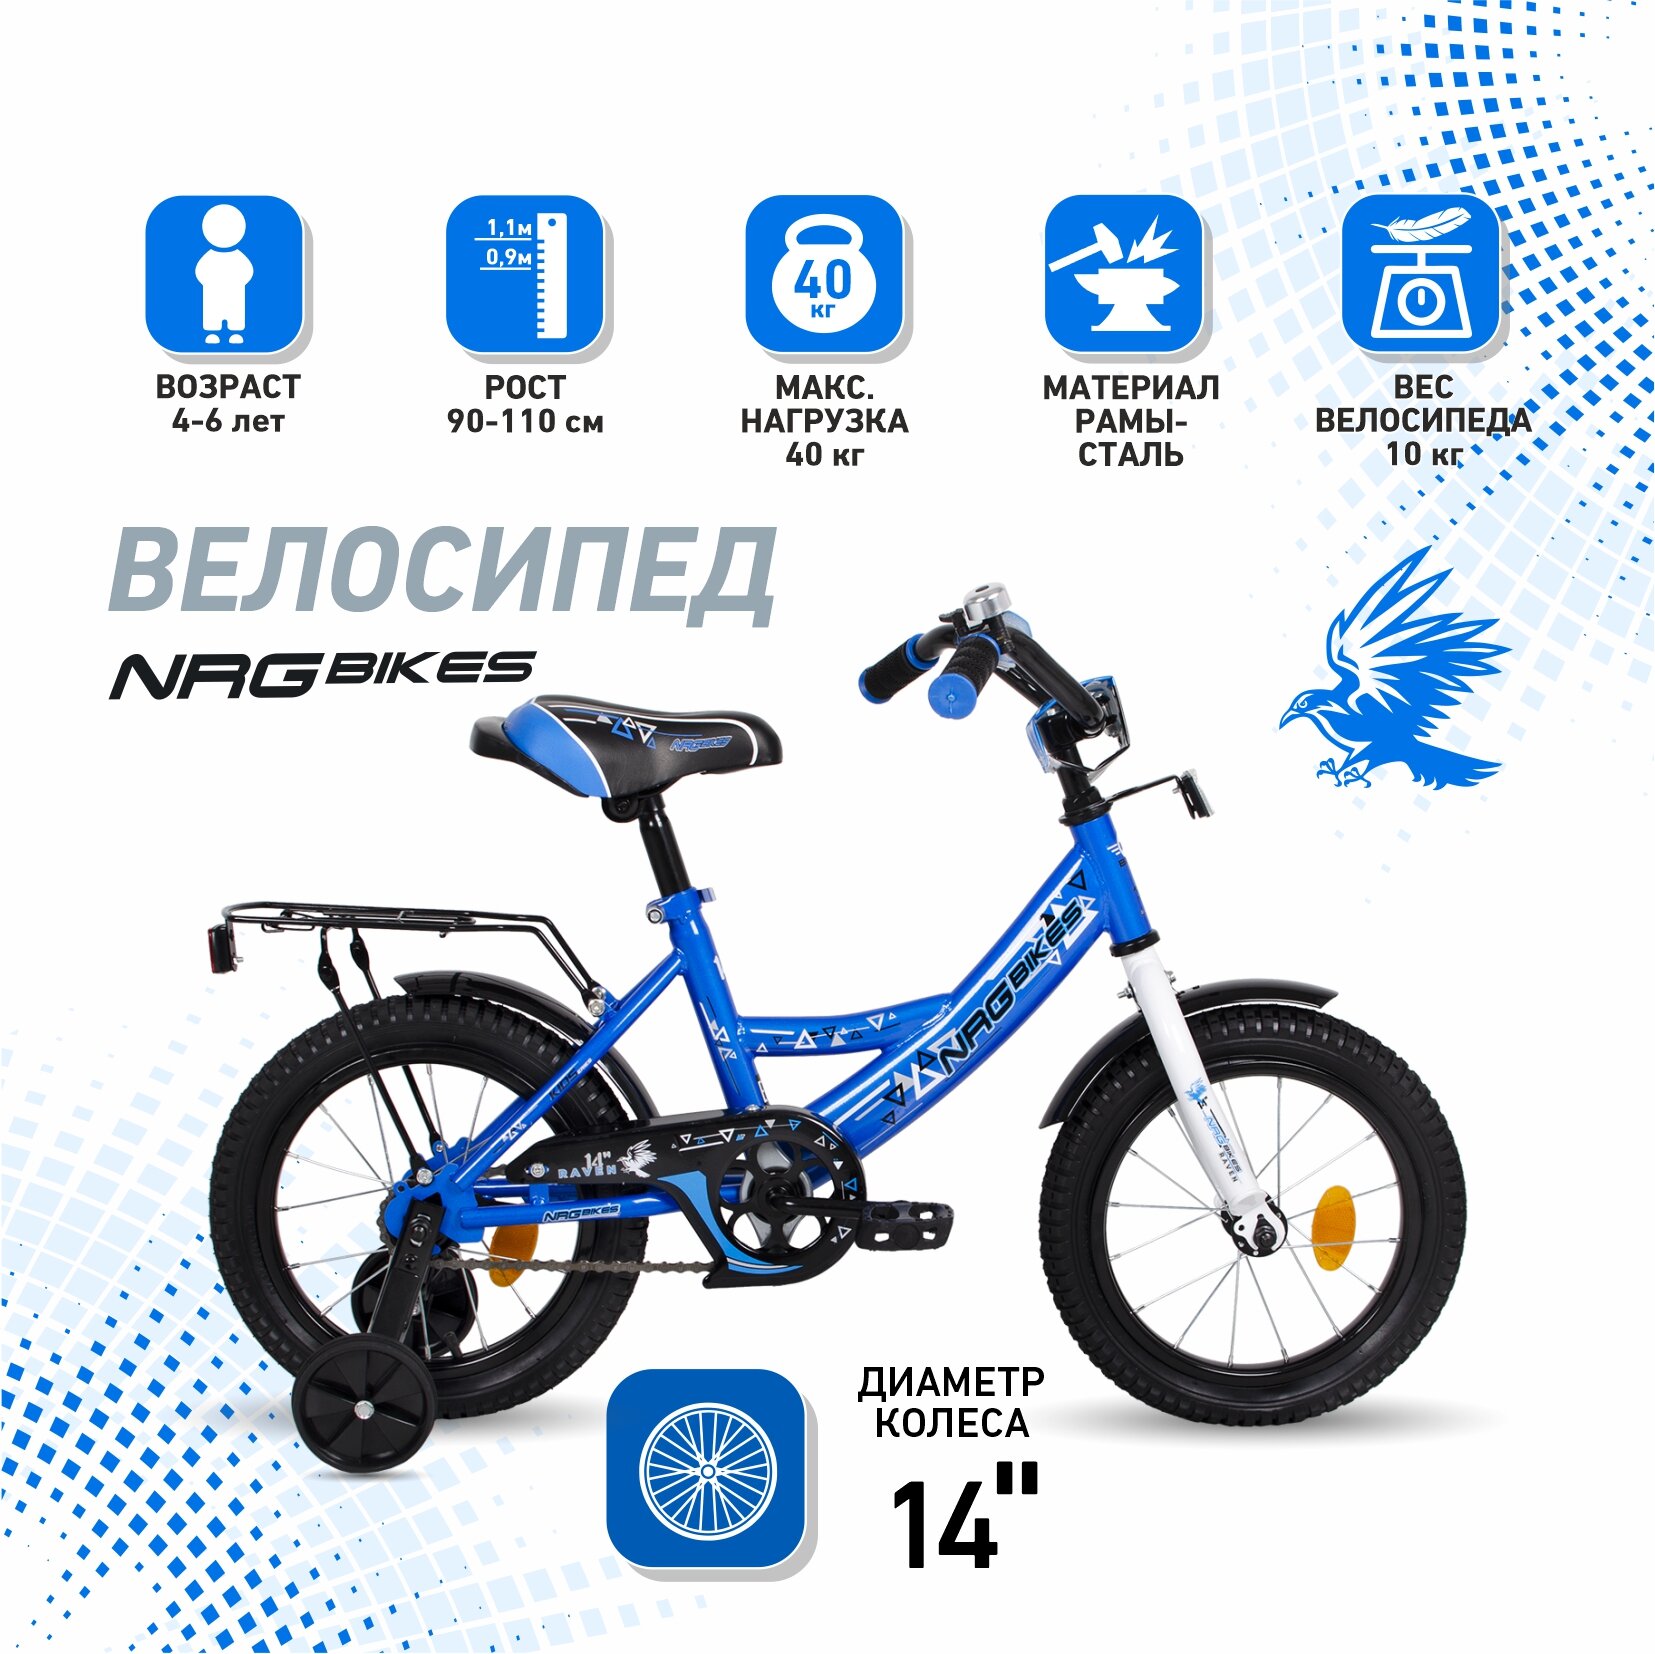 Велосипед детский NRG Bikes RAVON 14", сине-белый, 4-6 лет, рост 90-110 см